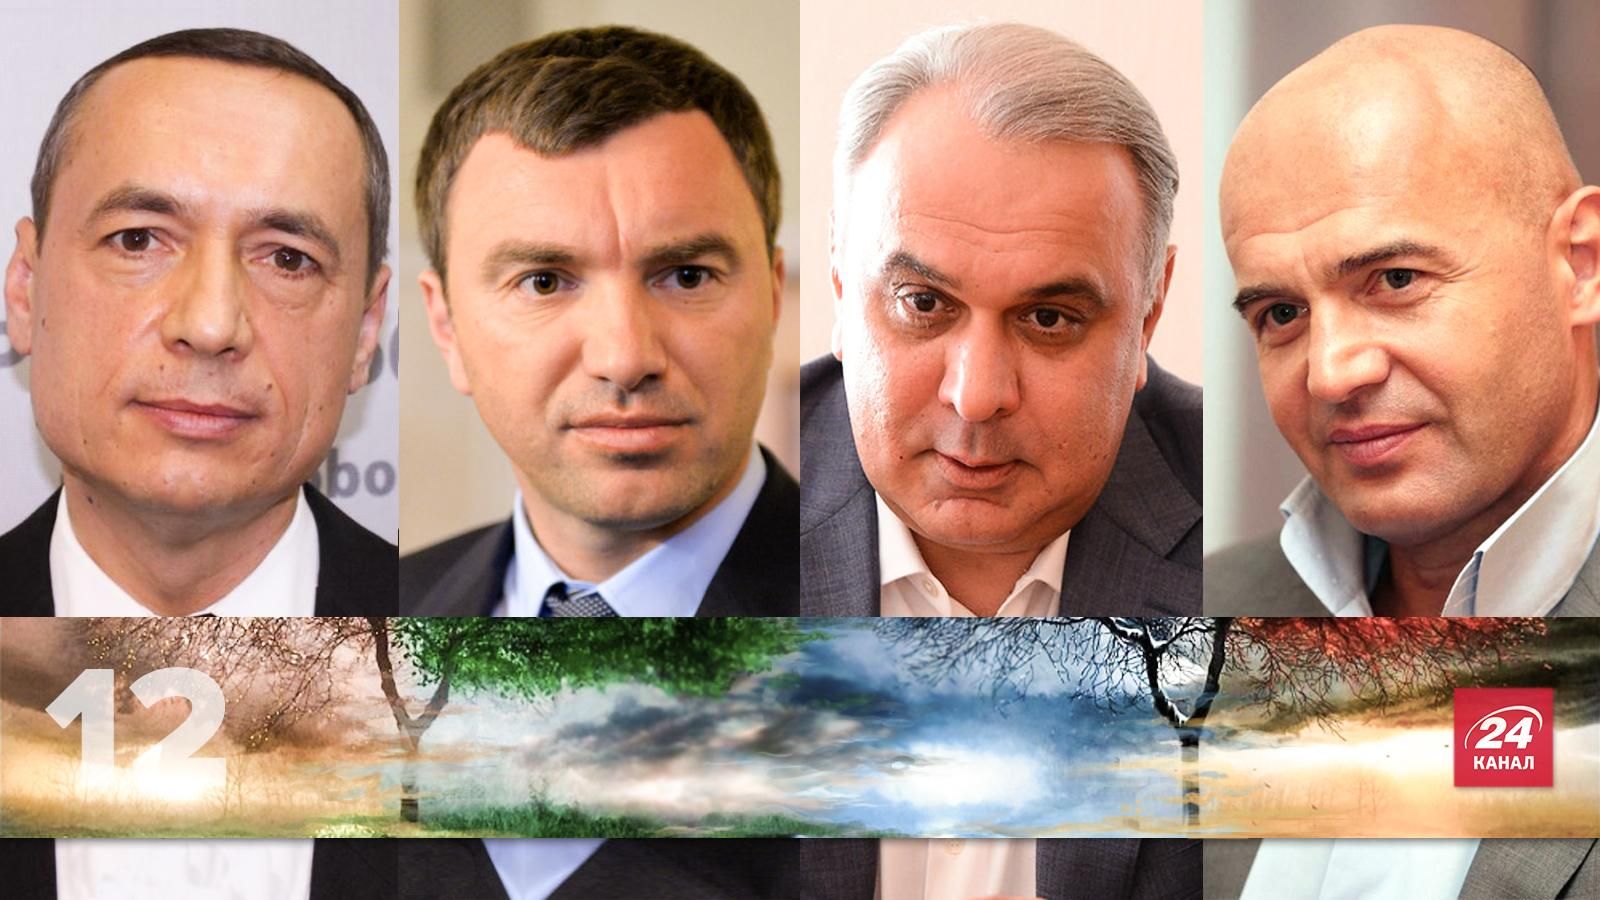 ТОП-12 підозрюваних в корупції українців 2015 року